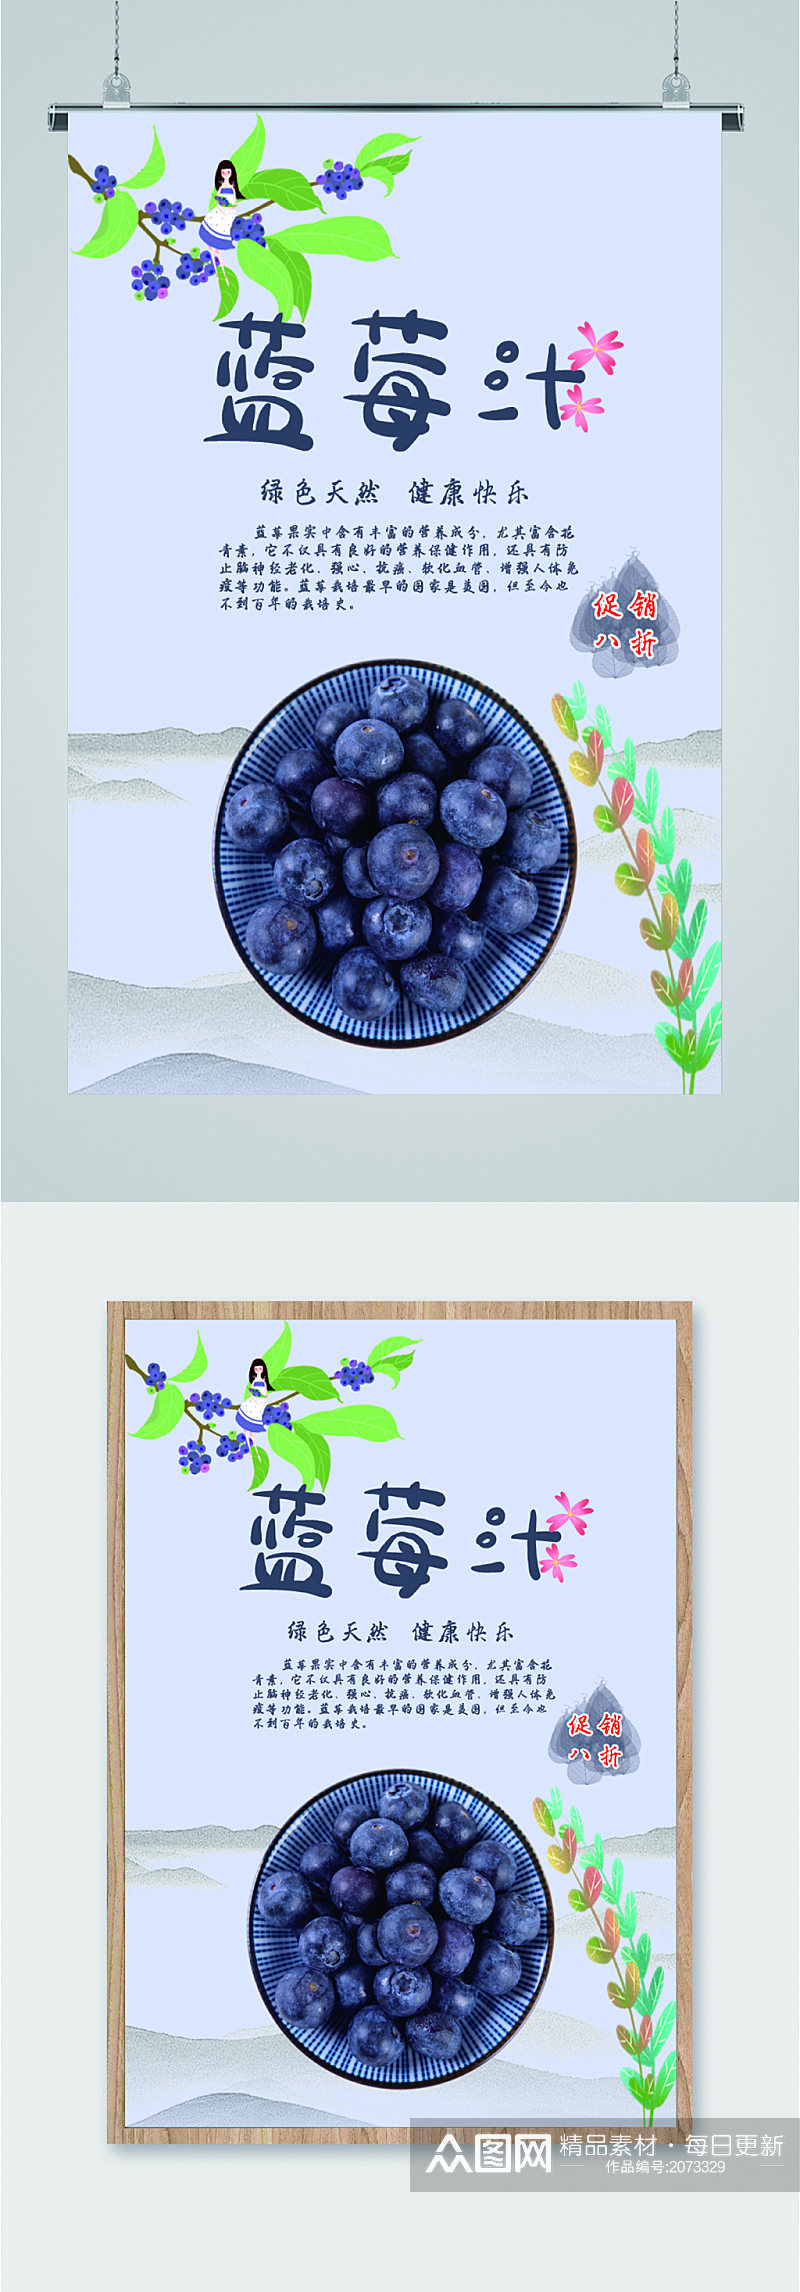 蓝莓汁绿色纯天然活动海报素材